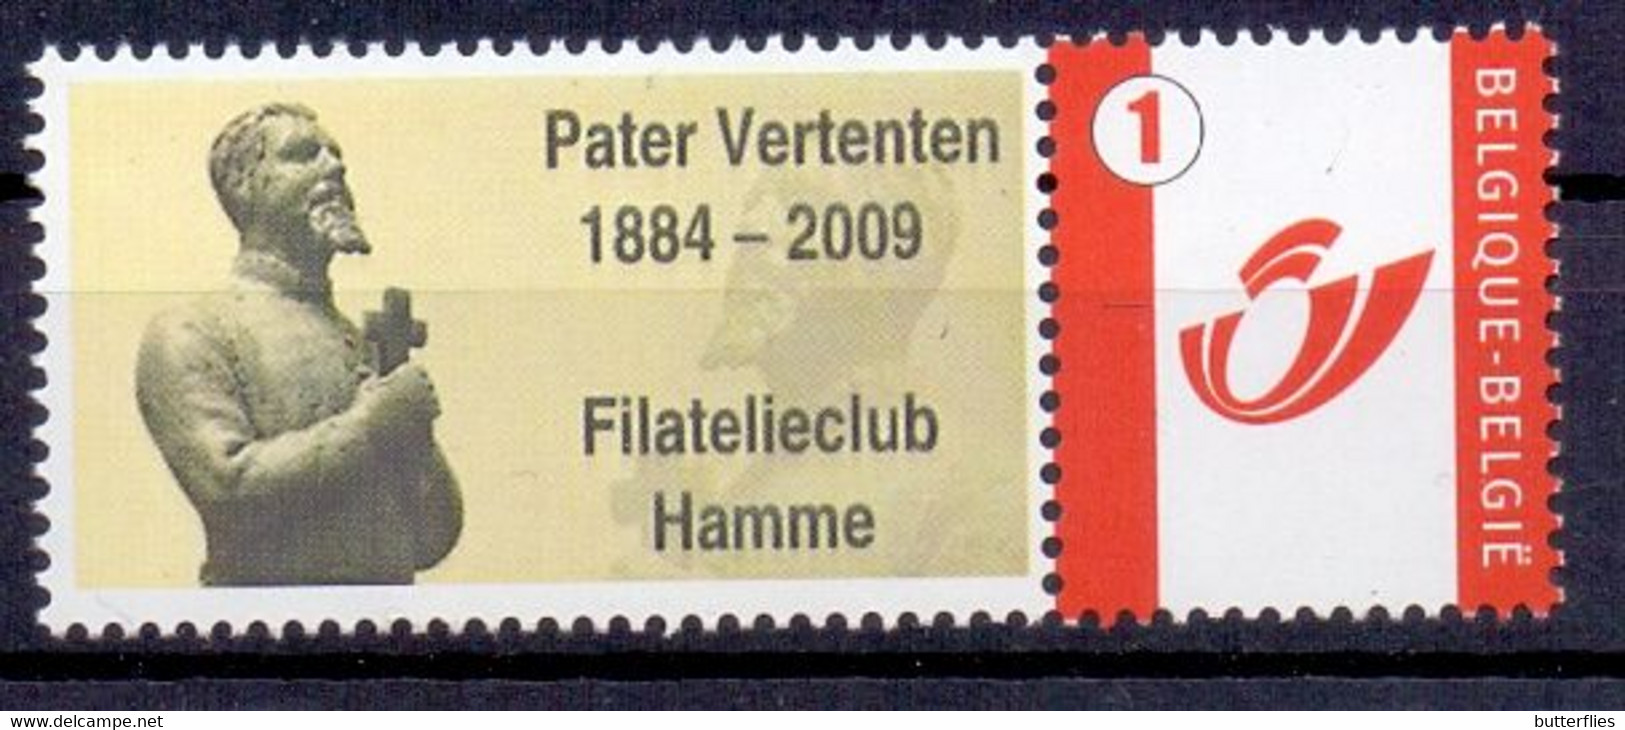 Belgie - 2009 - ** Duo Stamp  - Filatelieclub - Pater Vertenten ** - Mint